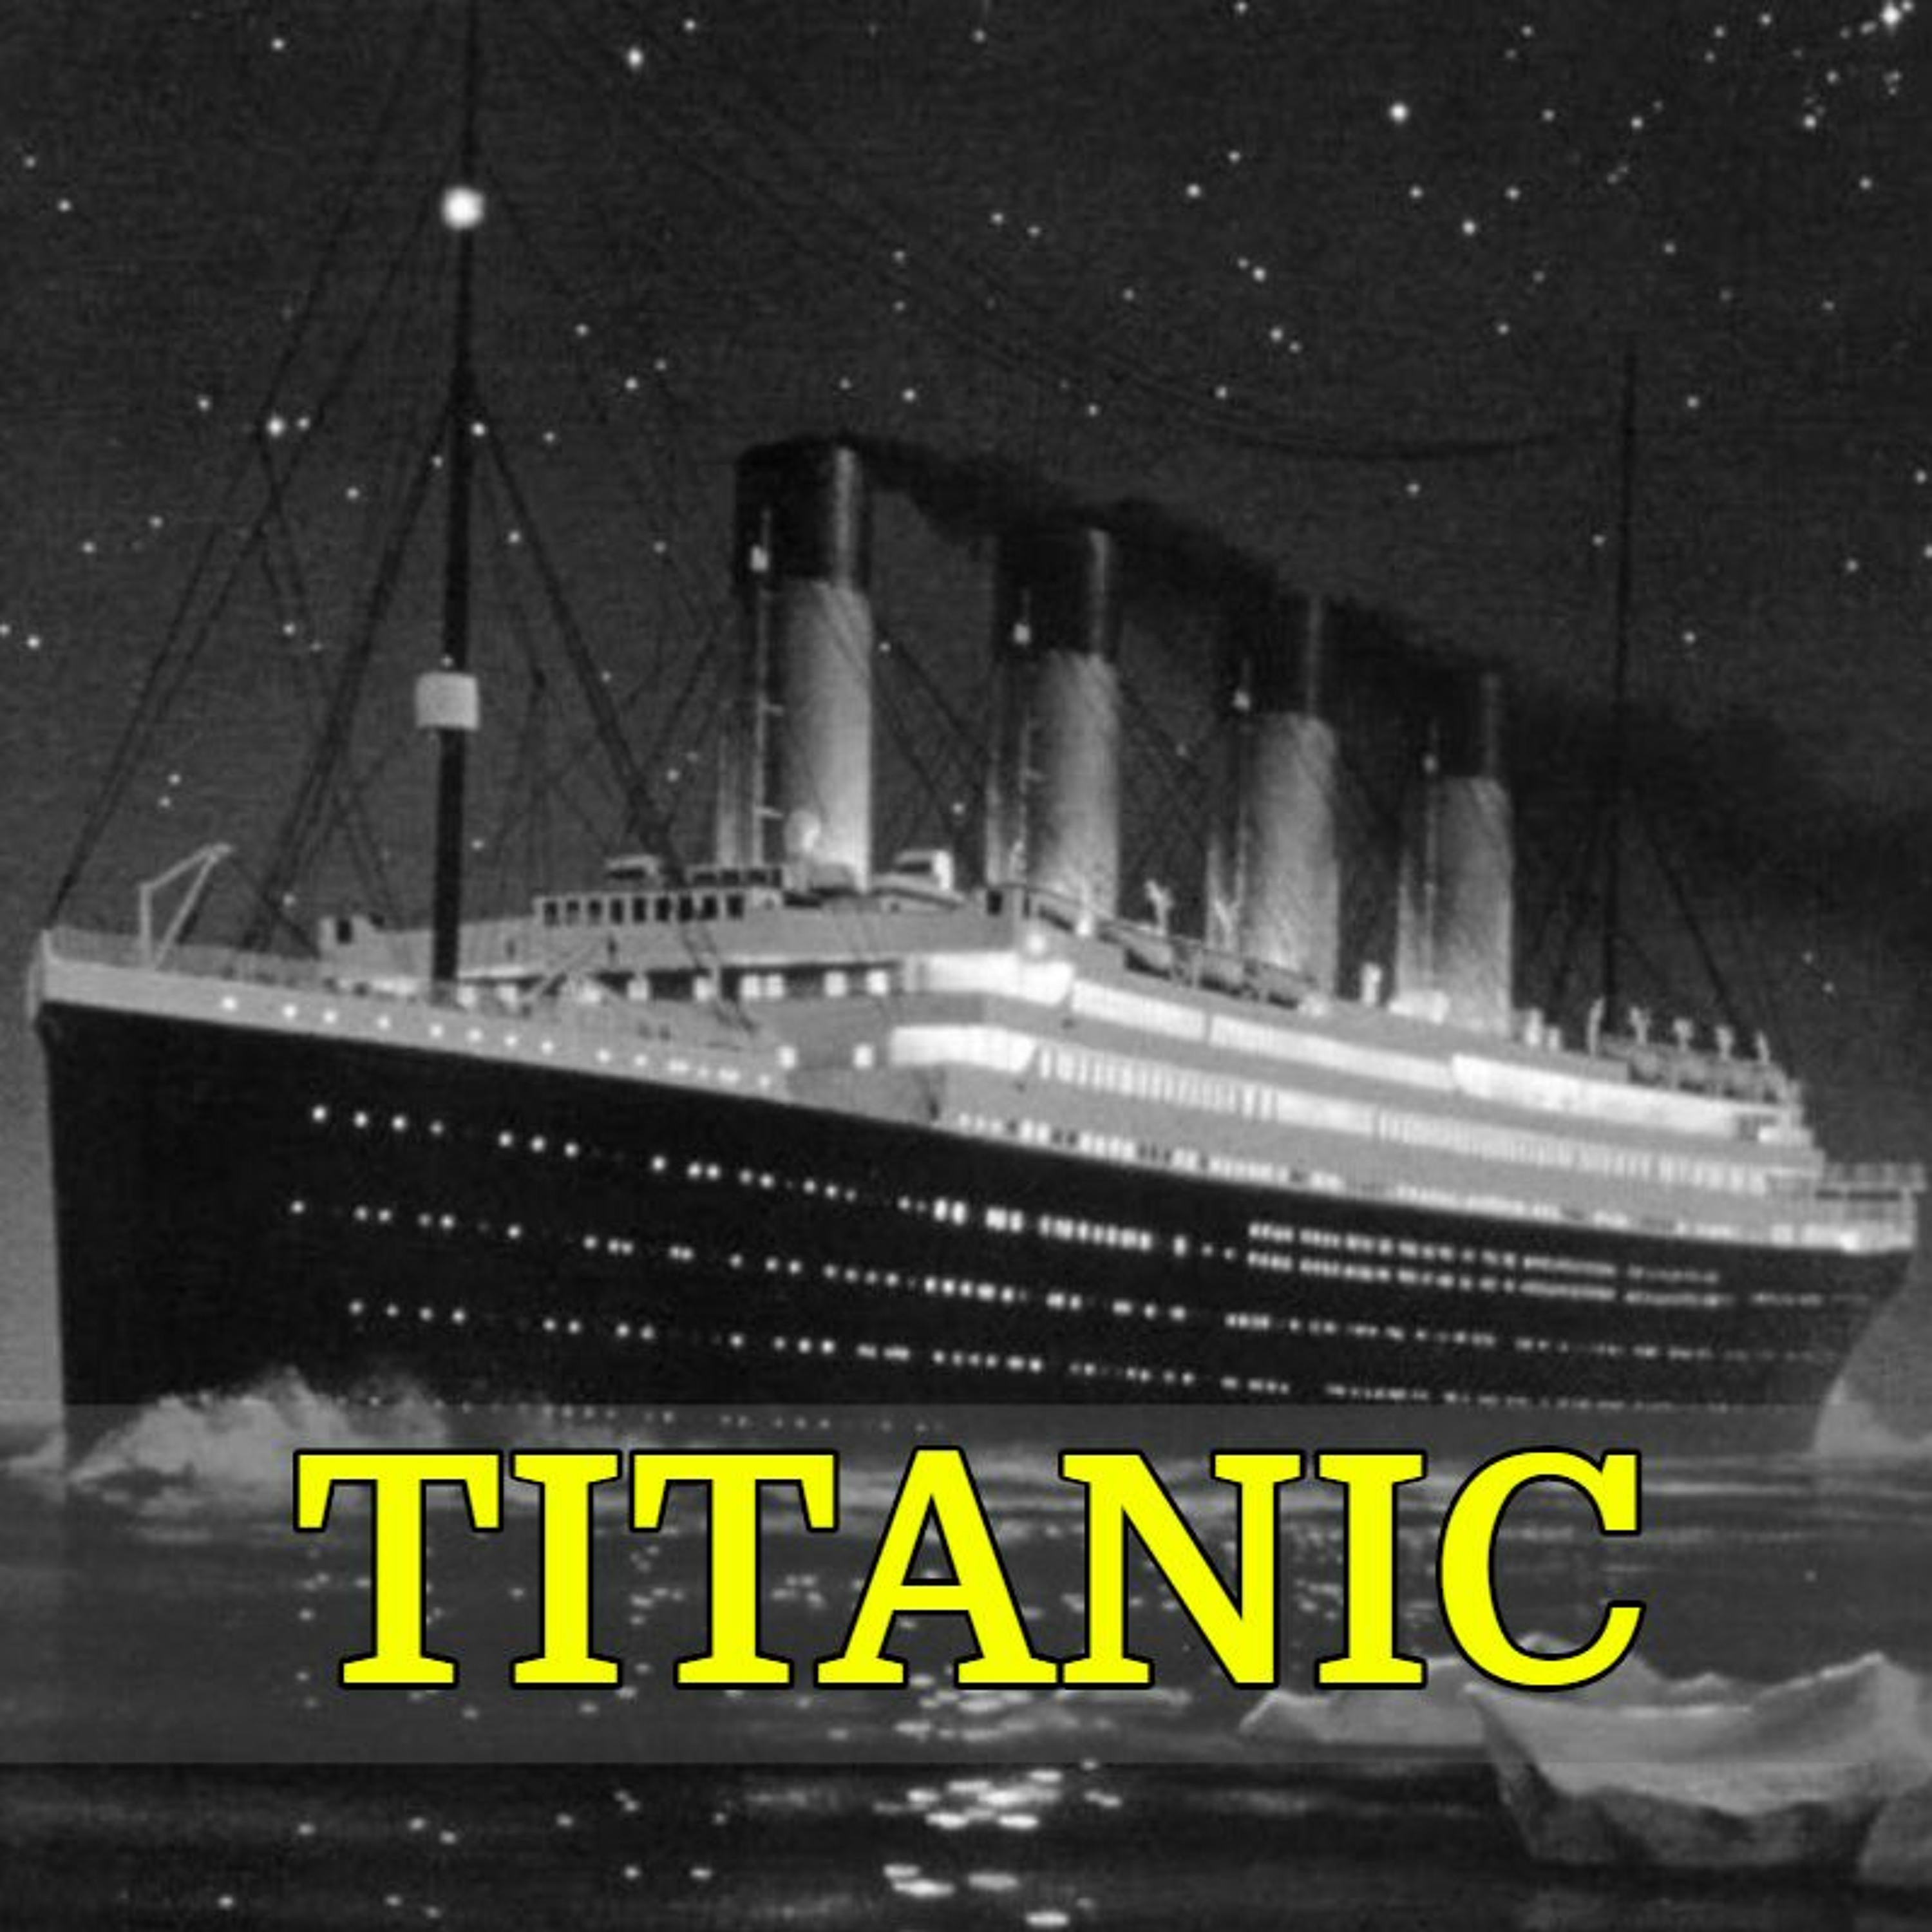 065 - Titanic